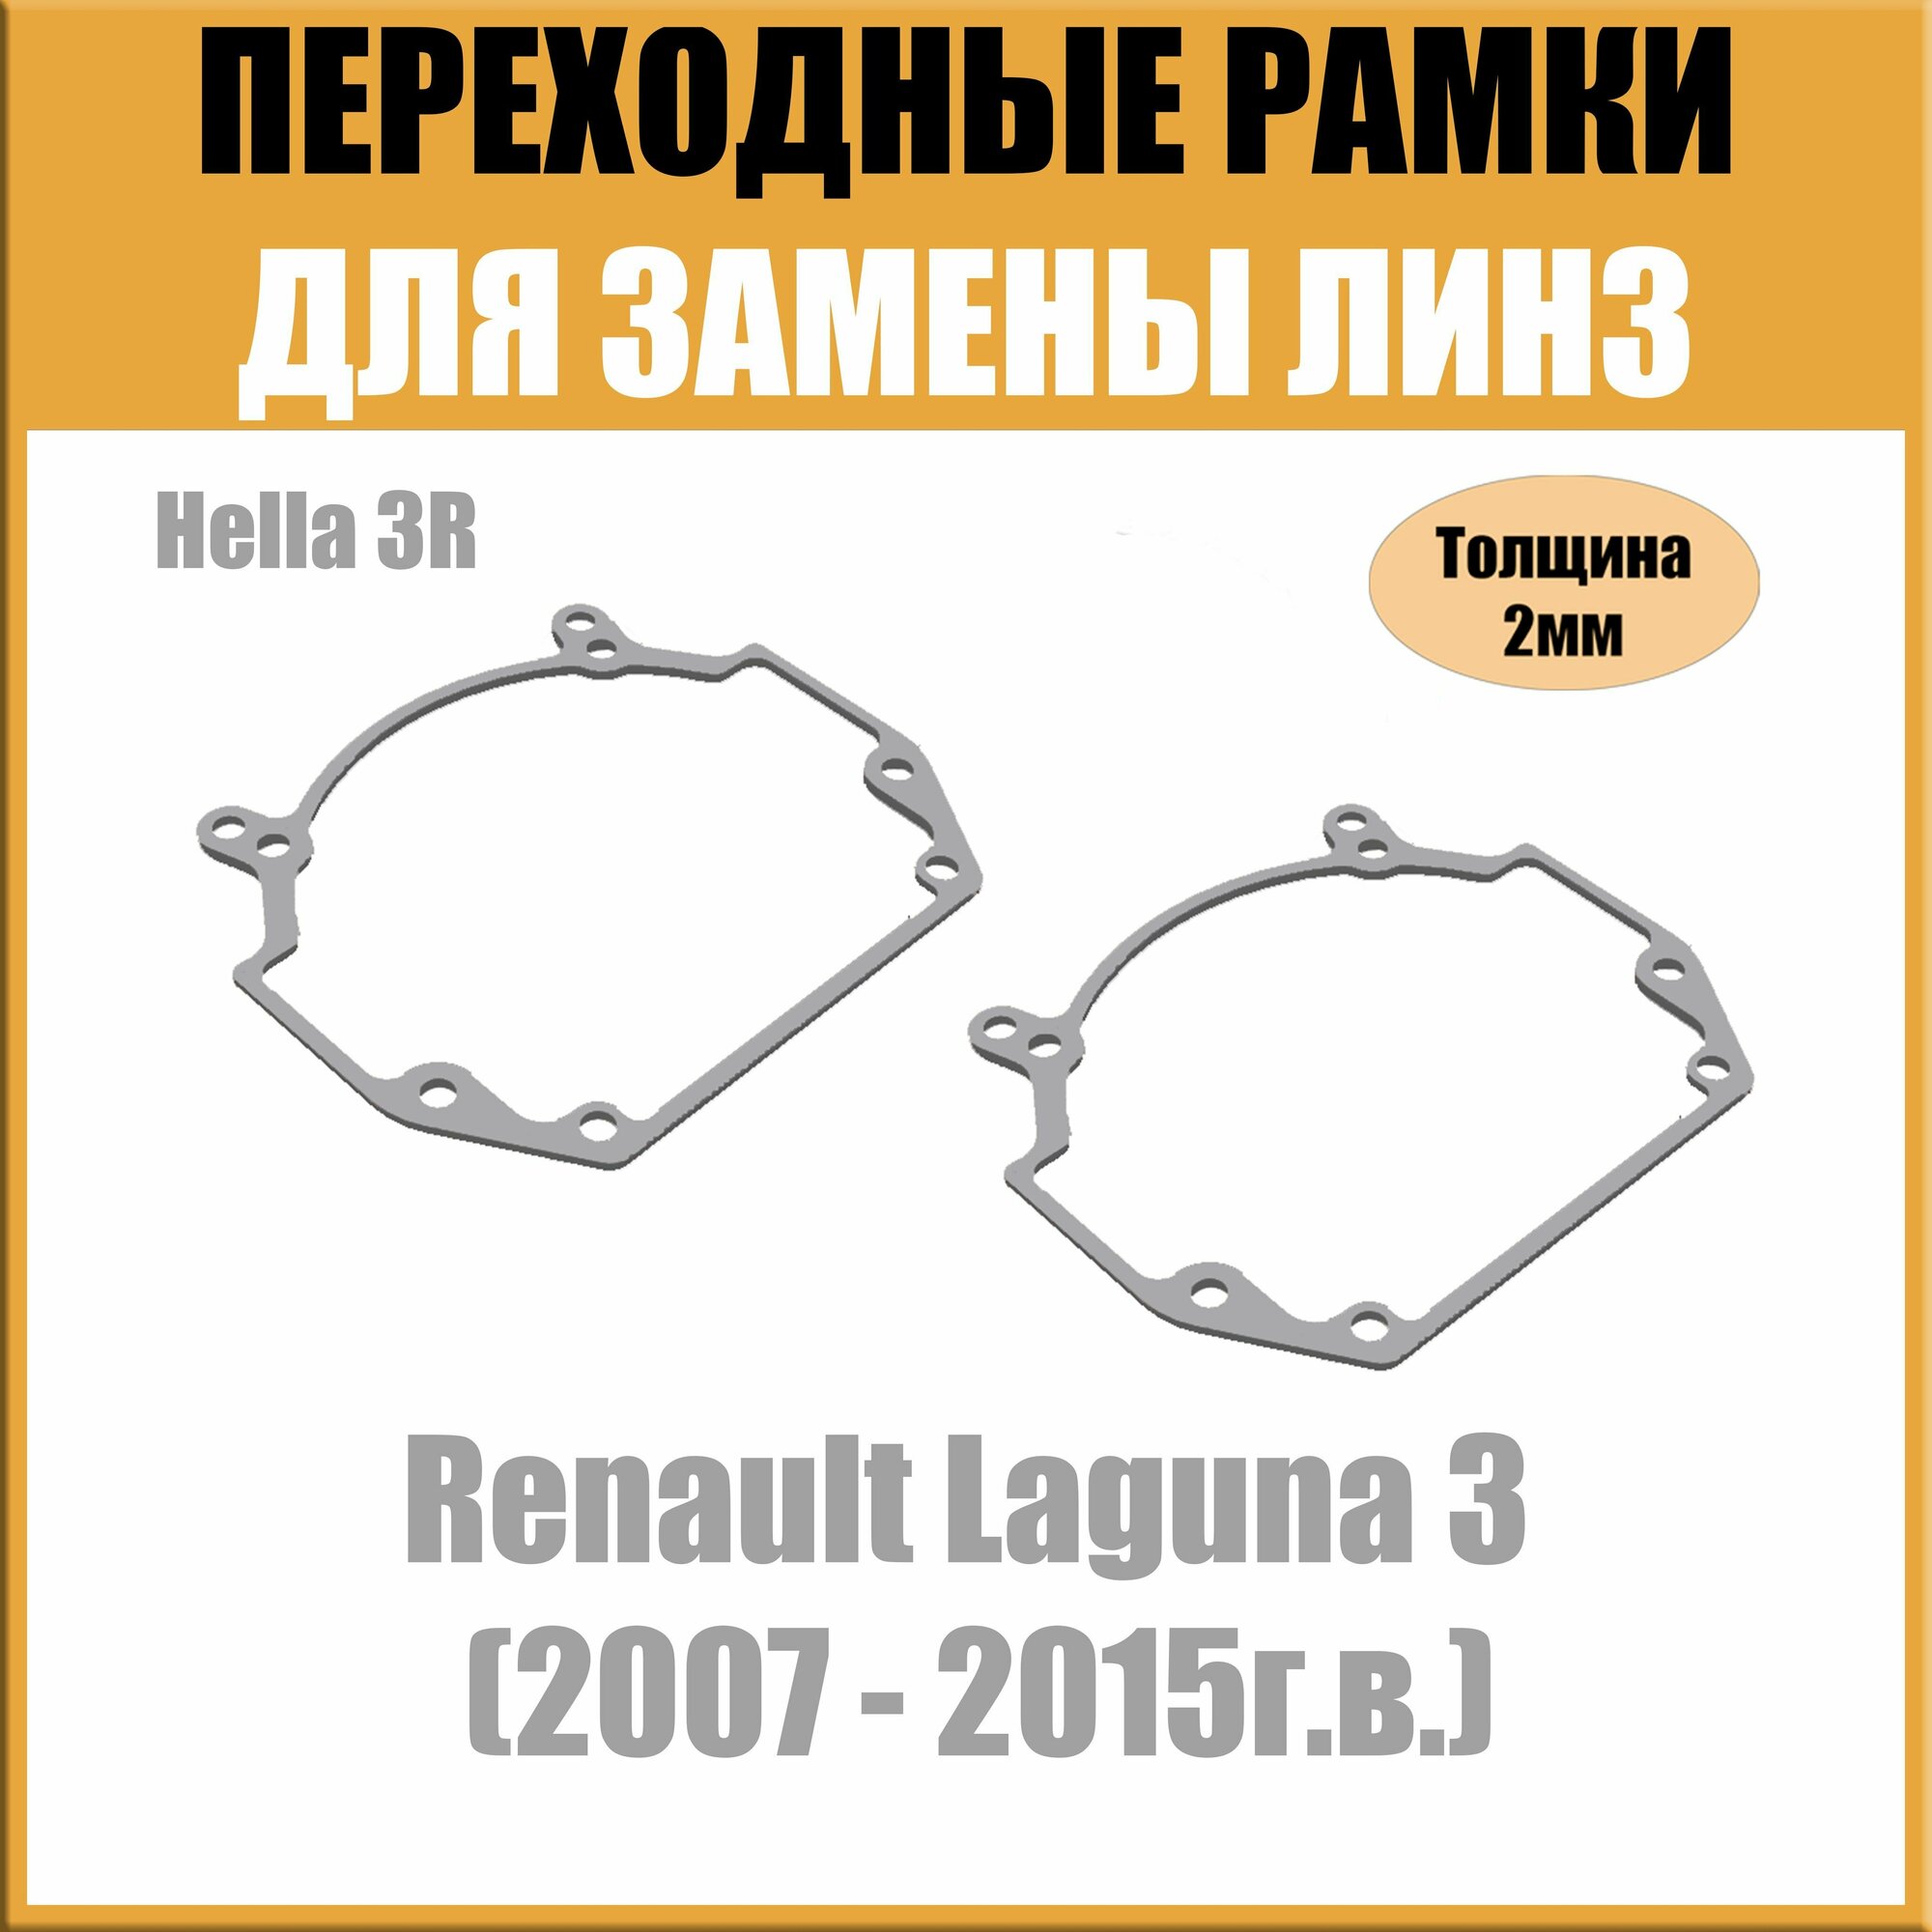 Переходные рамки для линз на Renault Laguna 3 (2007 - 2015г в) под модуль Hella 3R/Hella 5 (Комплект 2)